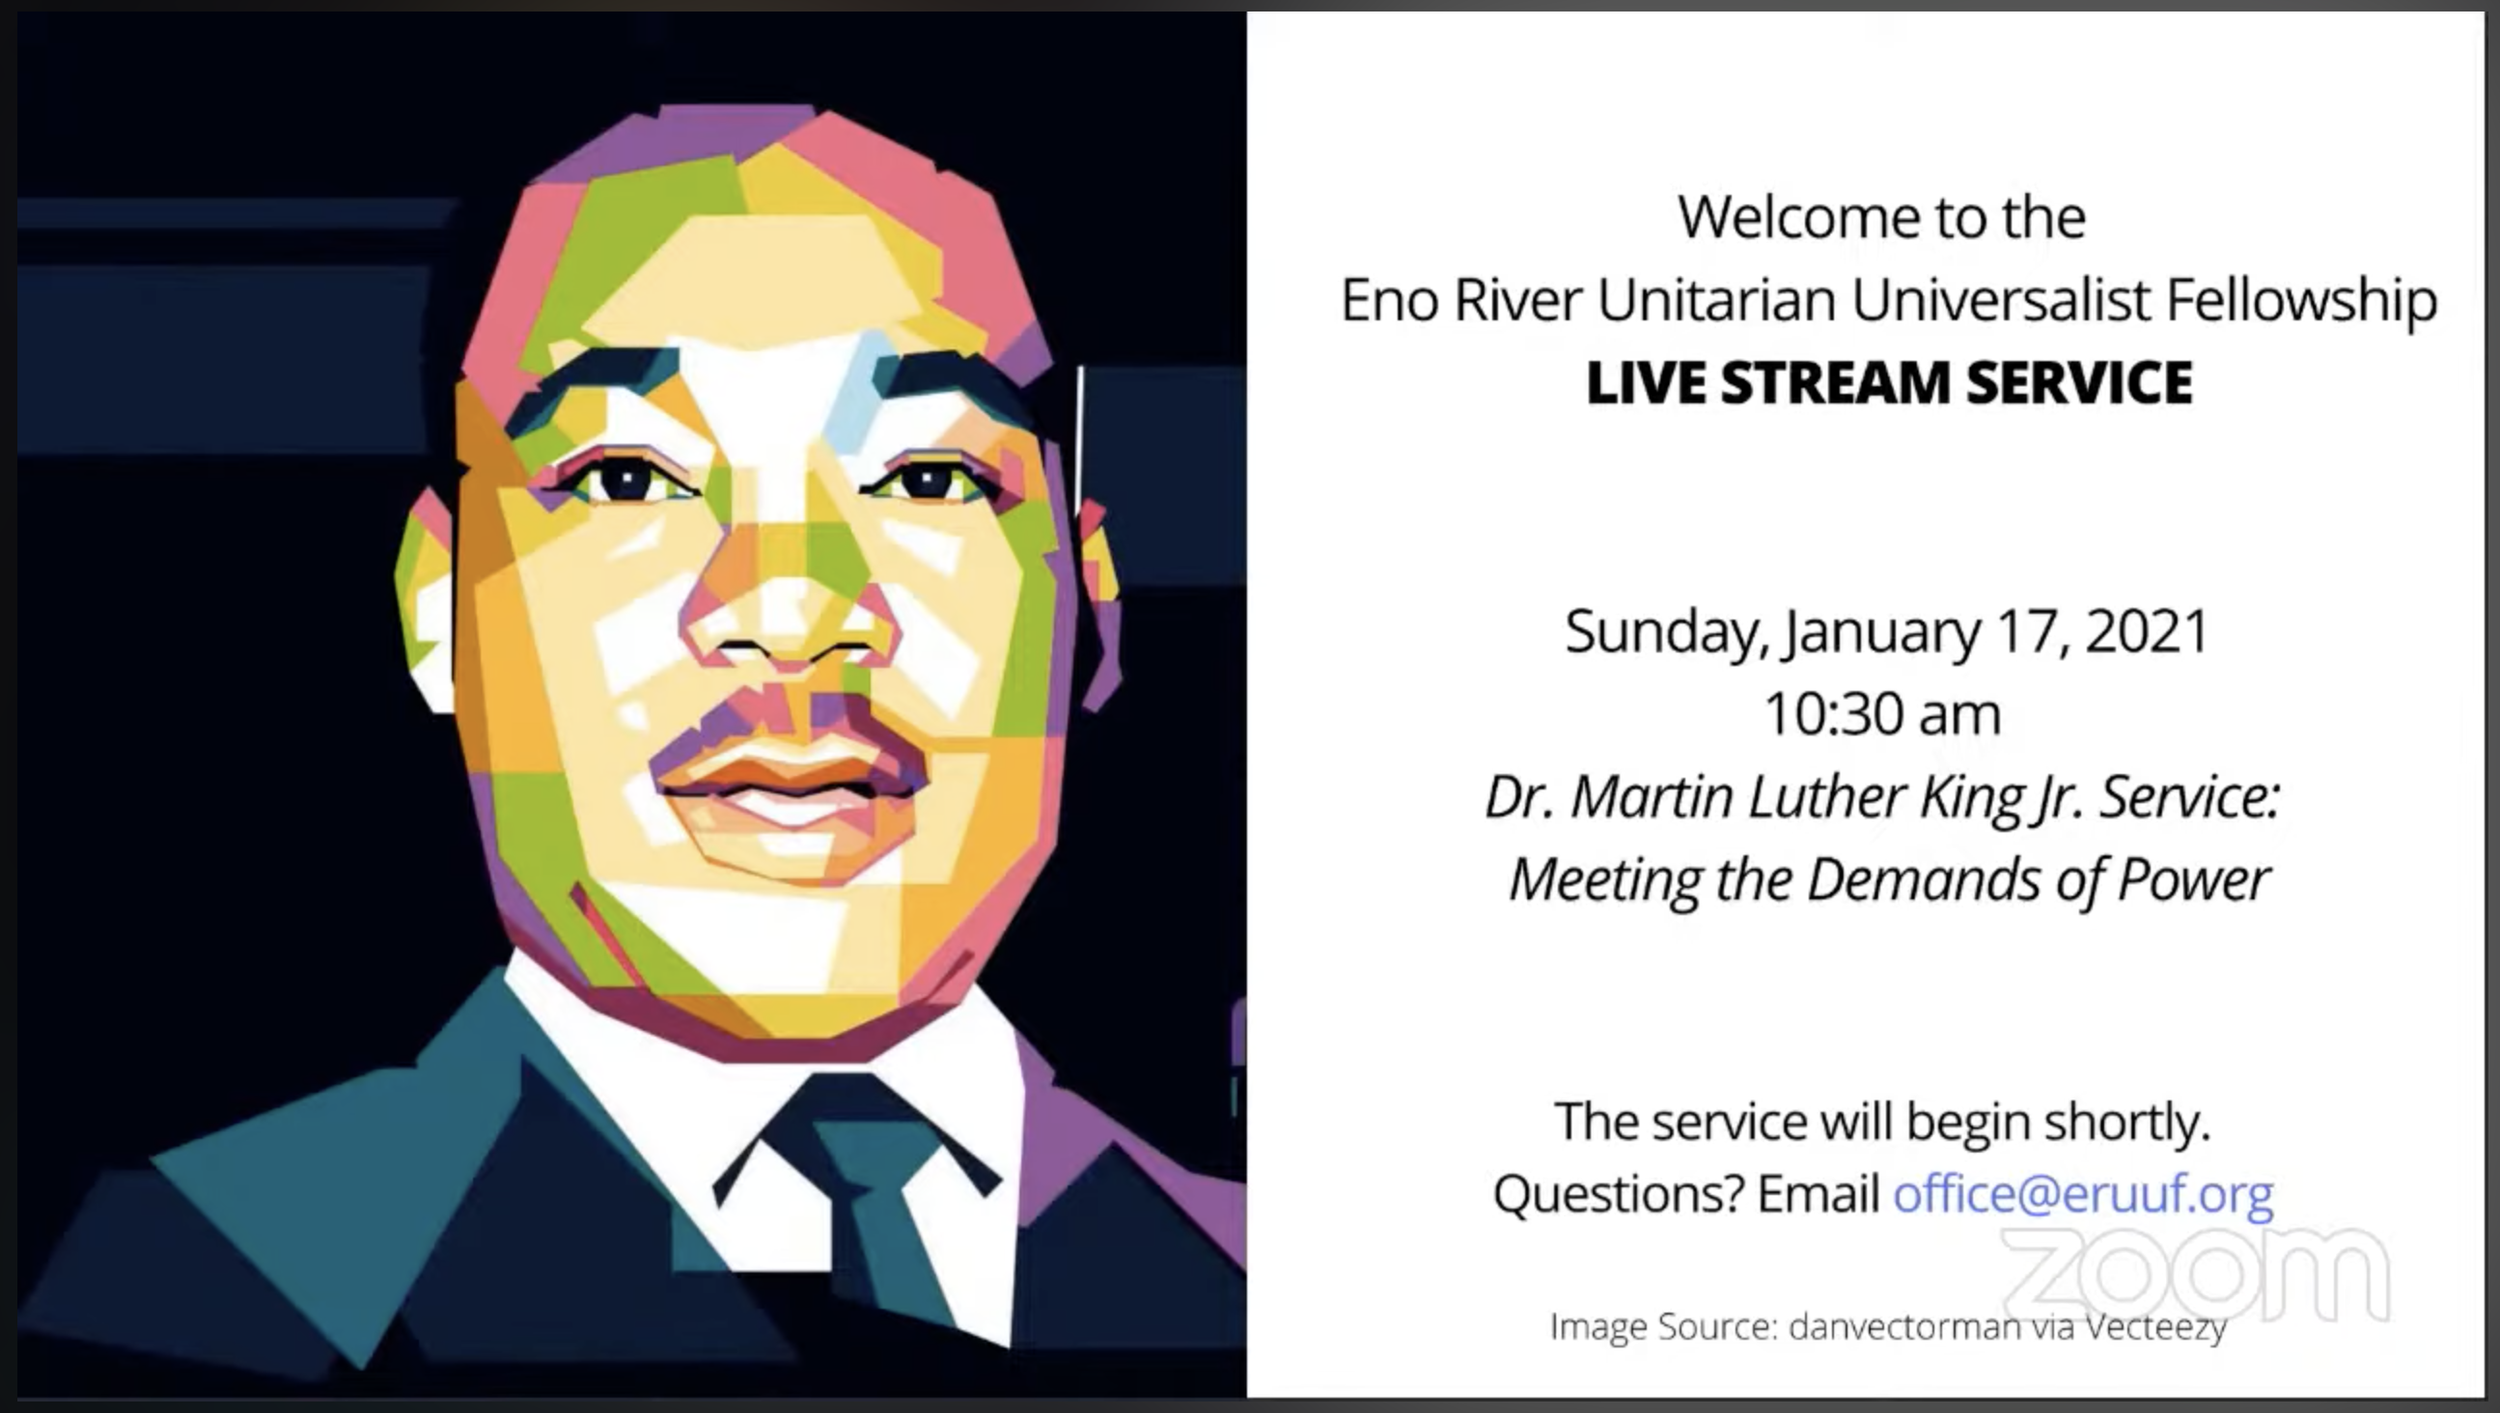 MLK Service: Meeting the Demands of Power